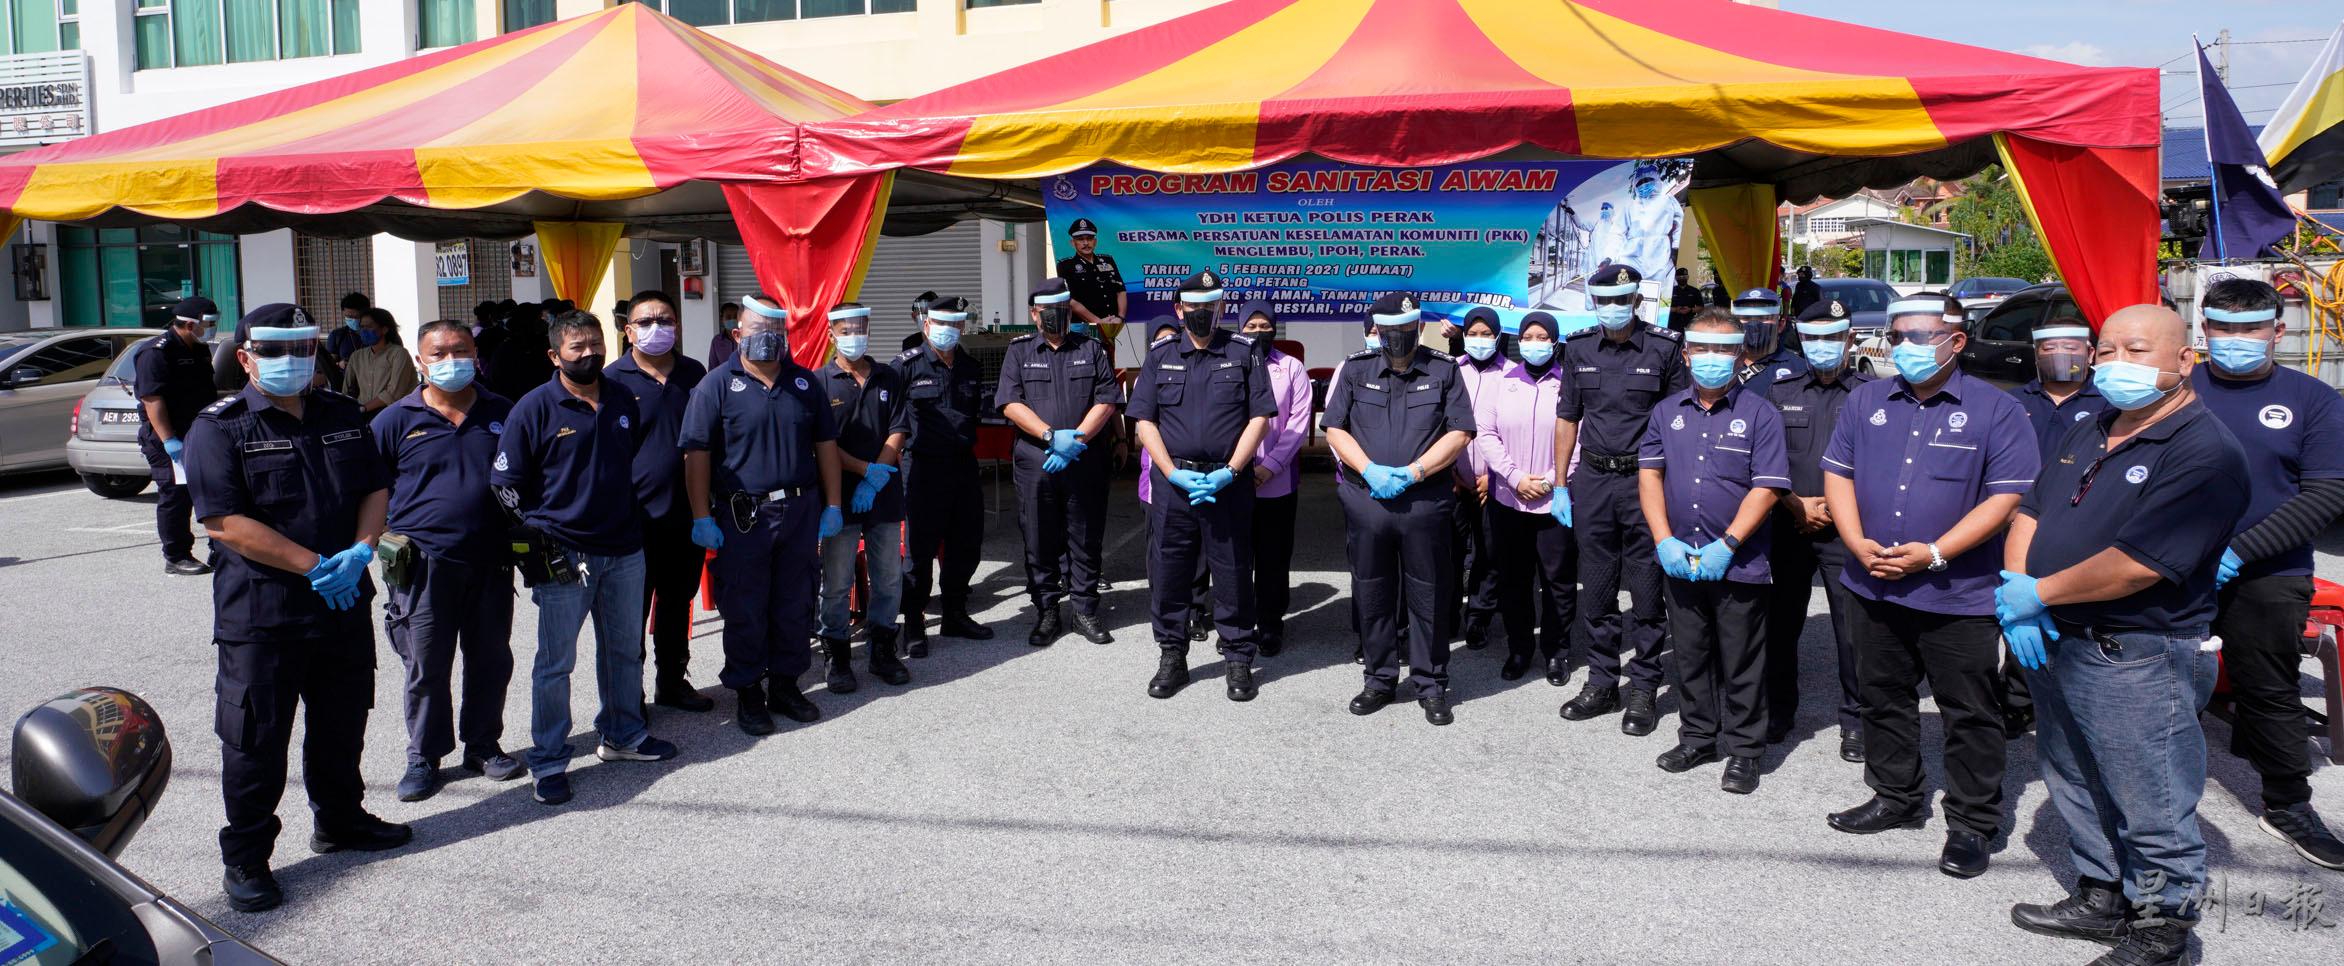 出席活动的警官和警员在活动上与万里望人民社警成员合照。